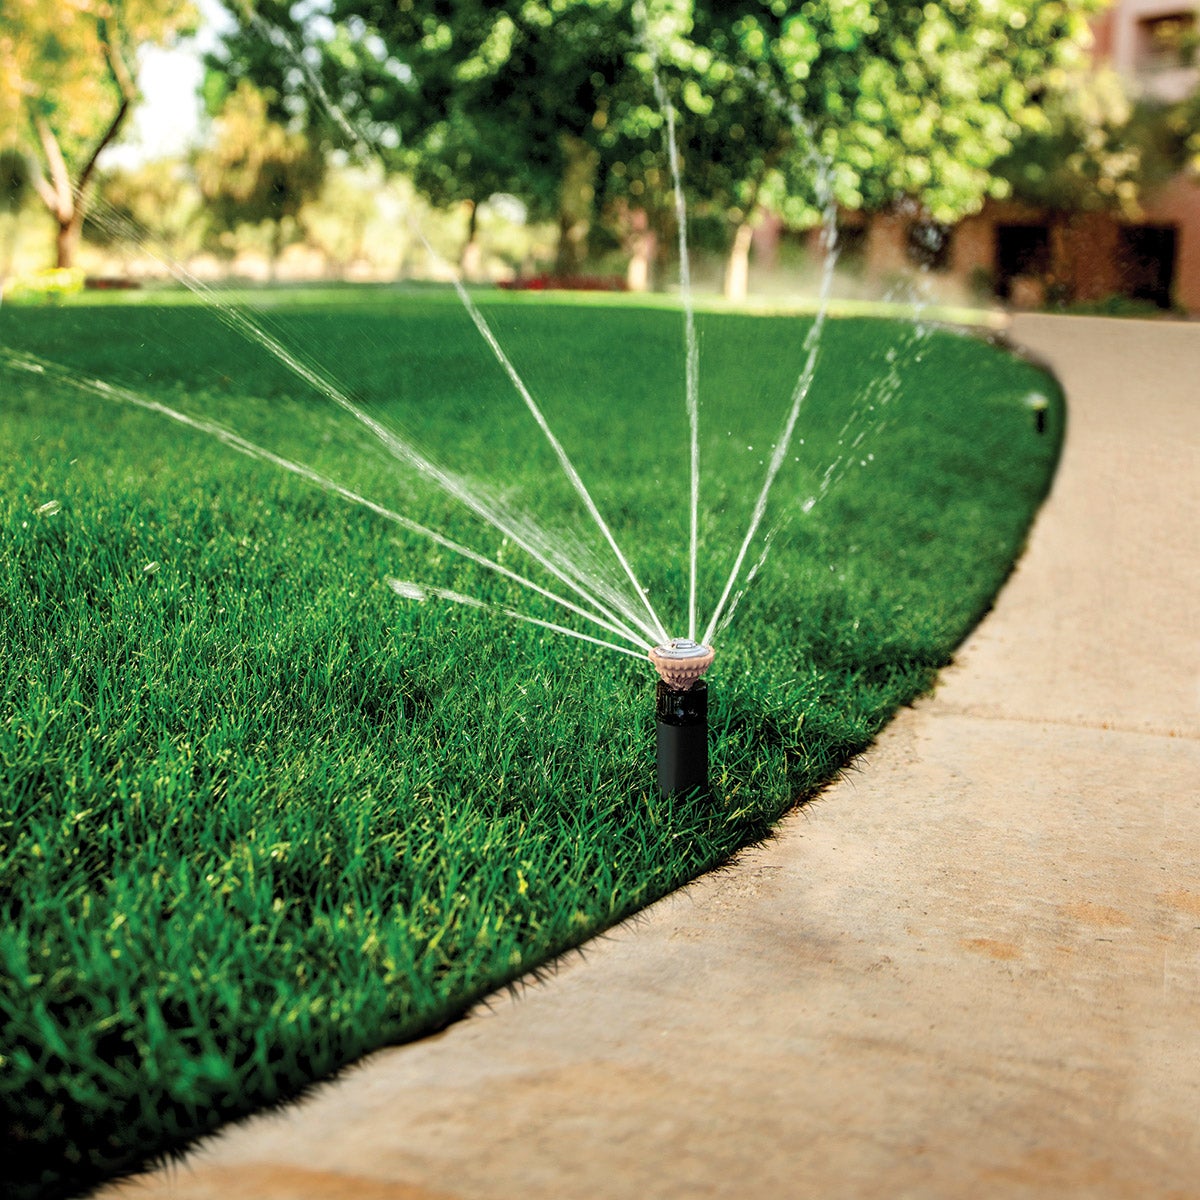 sprinkler watering sidewalk